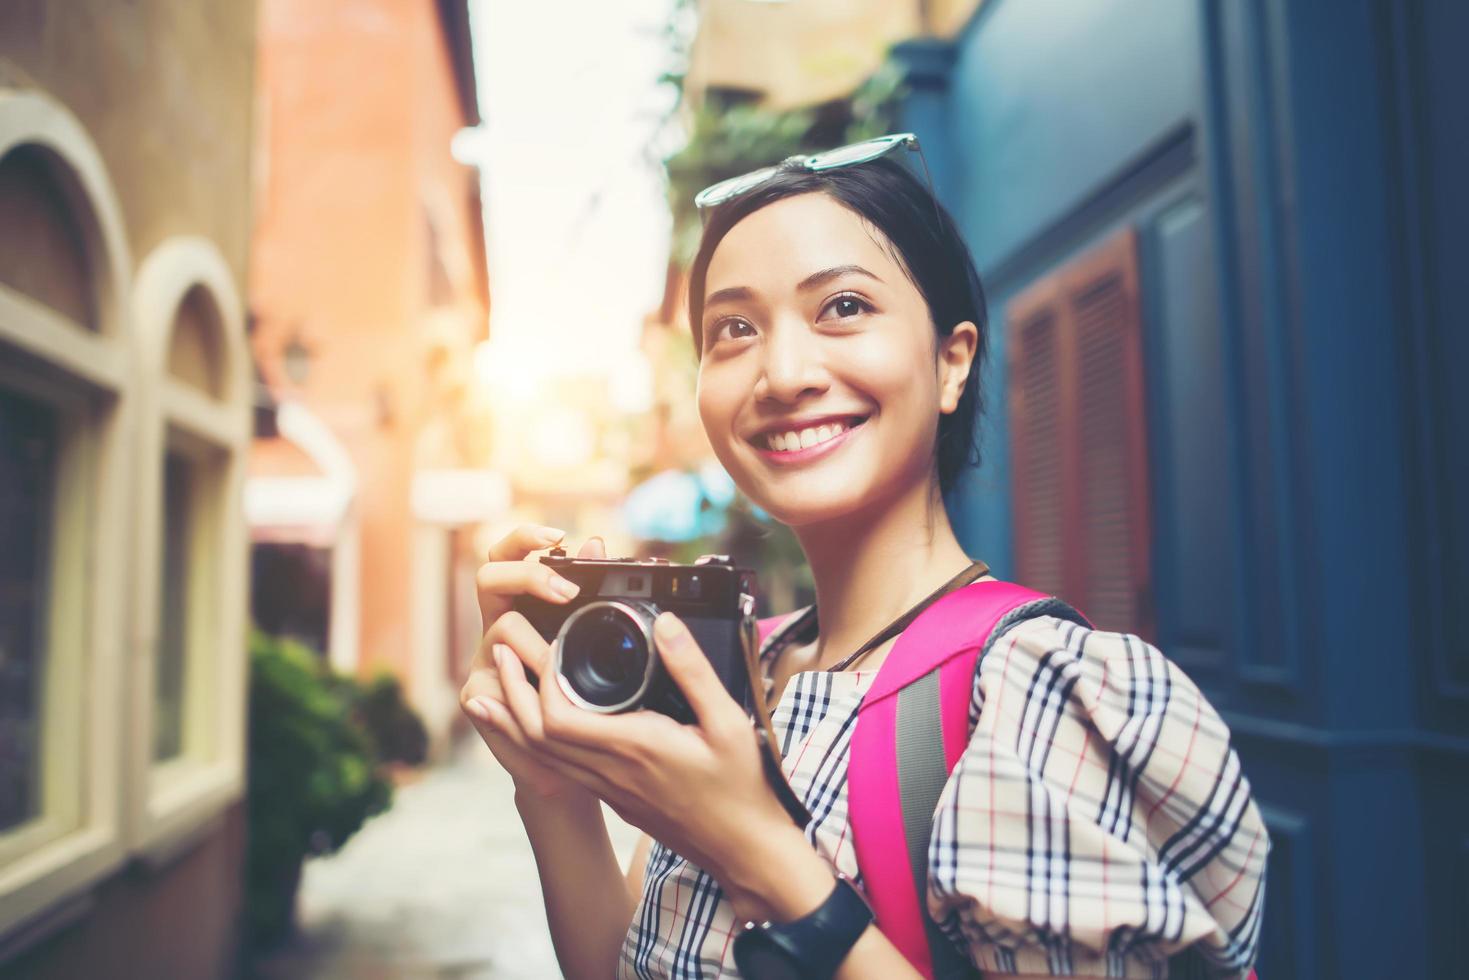 närbild av en ung hipsterkvinna som reser och tar foton med sin kamera